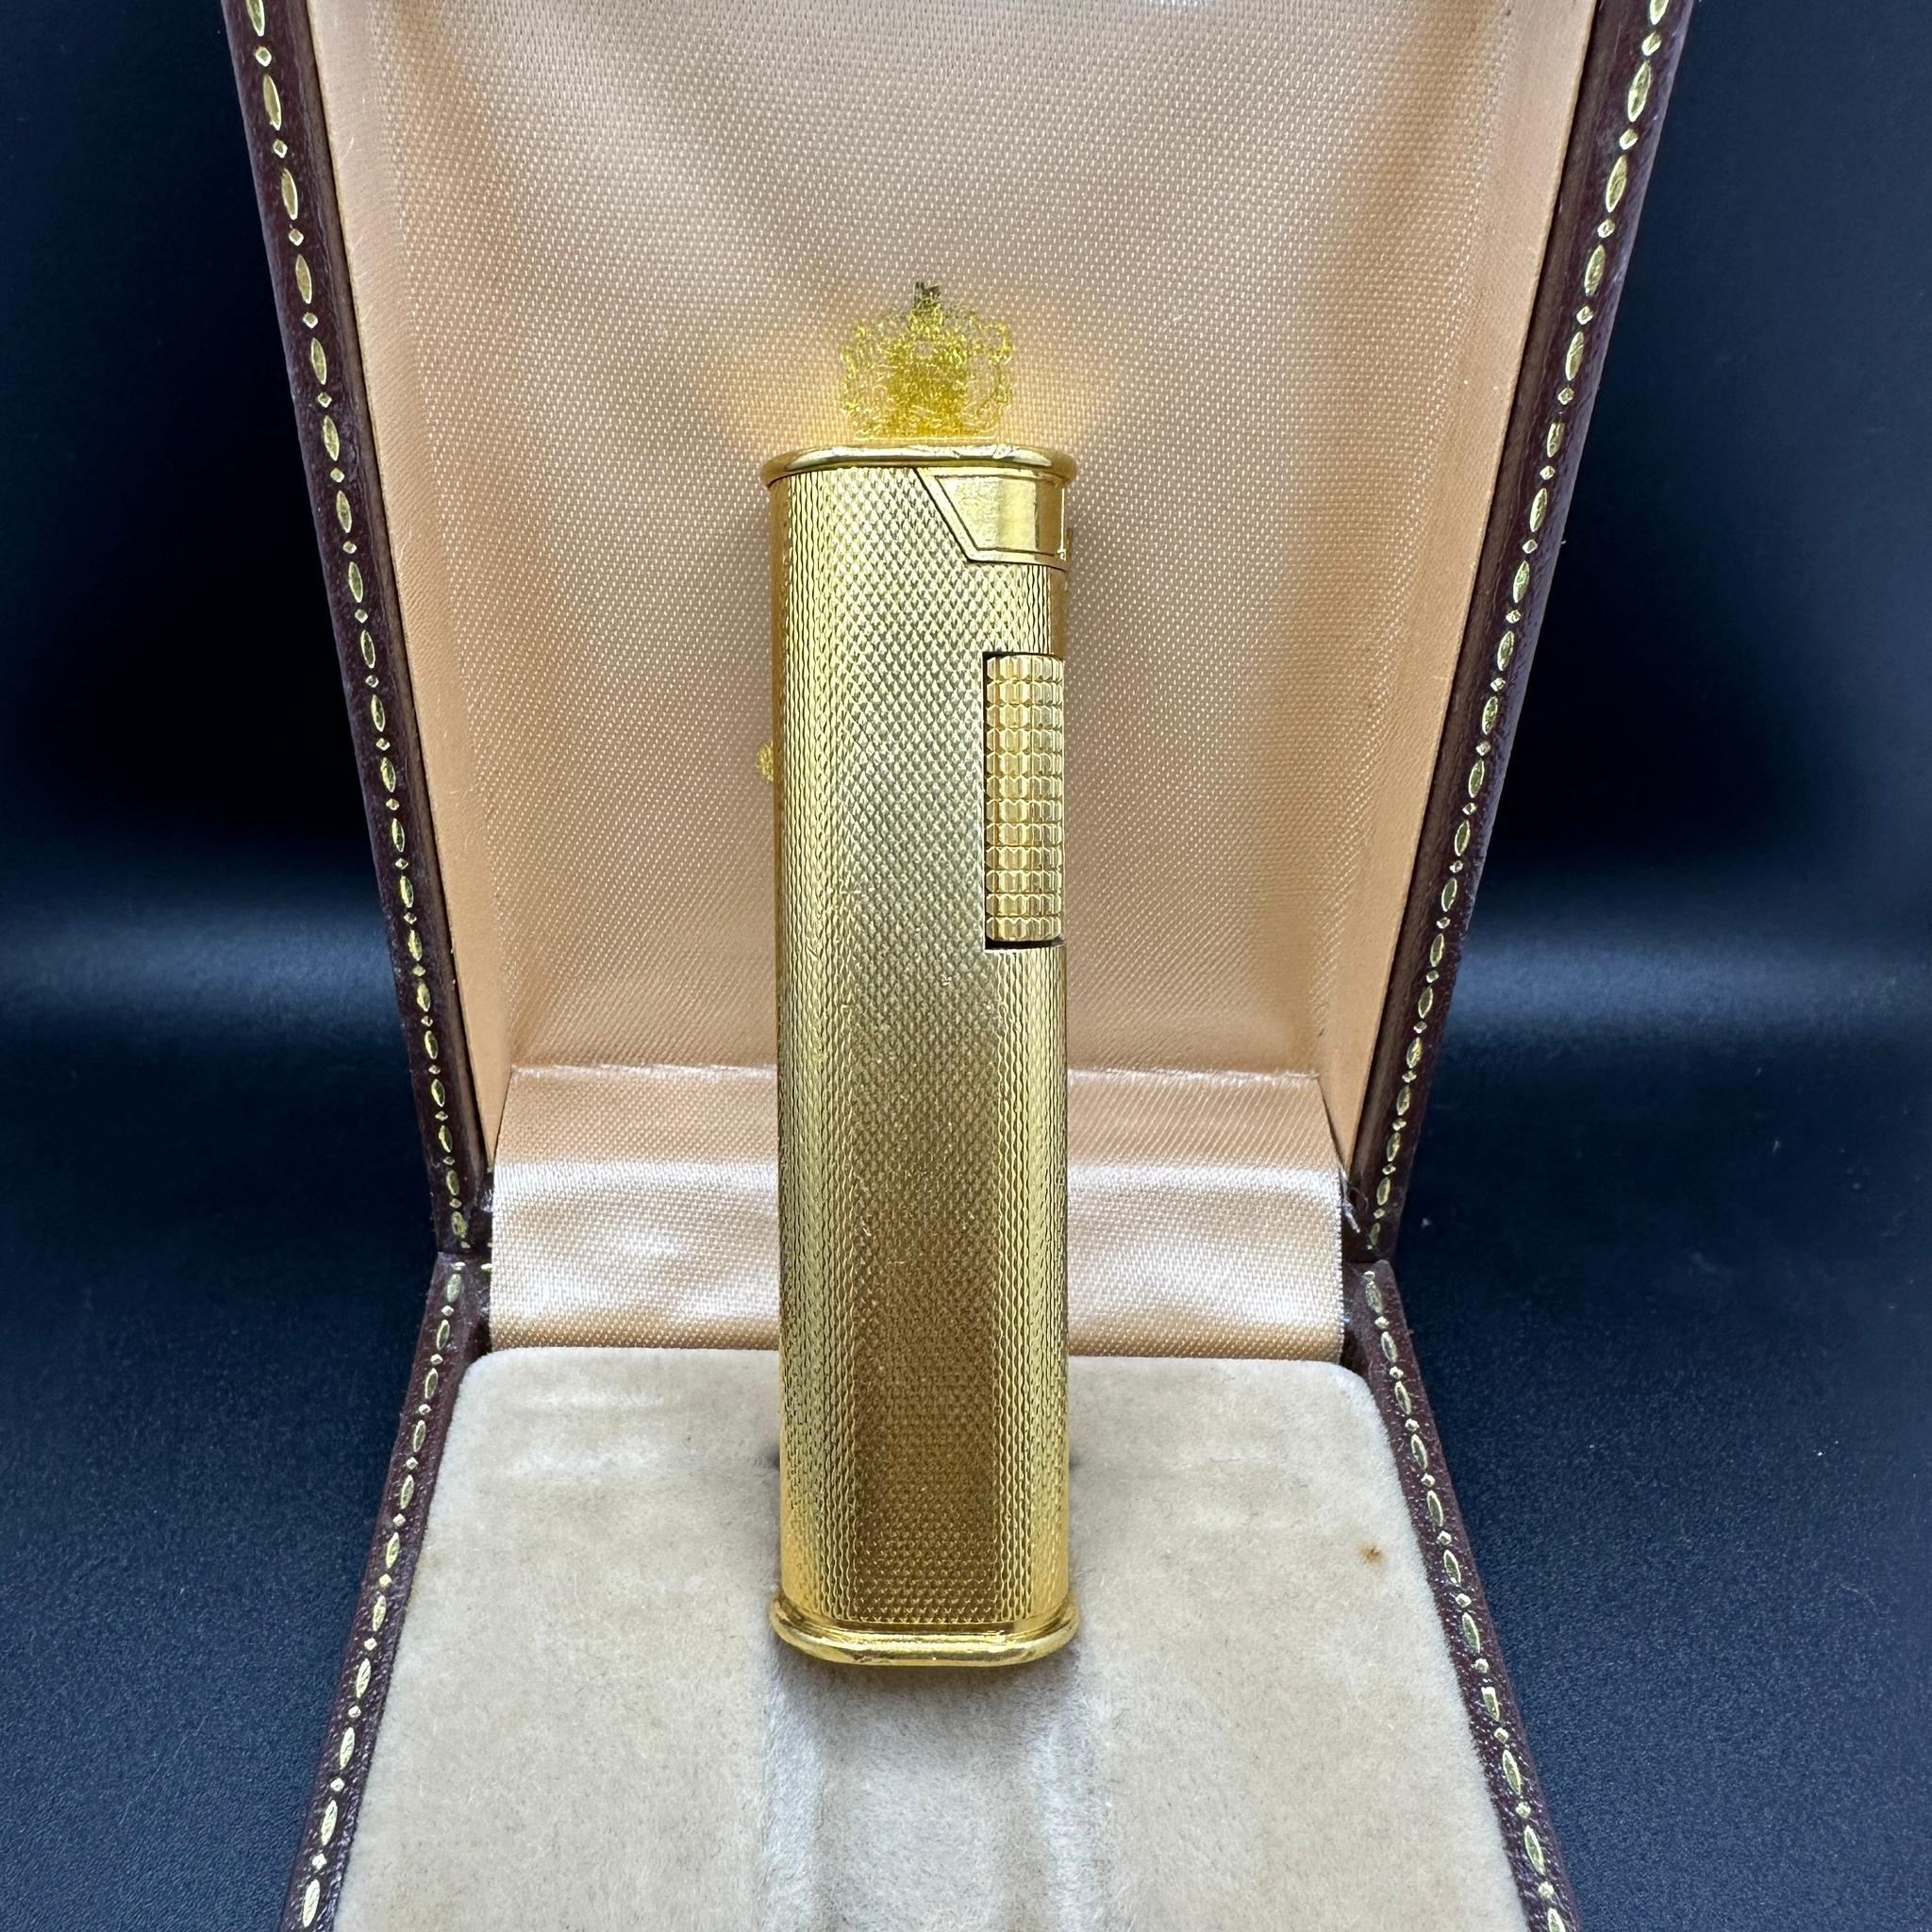 Encendedor Skinny vintage Dunhill chapado en oro 
Este encendedor se fabricó entre 1960 y 1970 como encendedor de noche, con una silueta larga y delgada.
Te cabe perfectamente en el bolsillo de la chaqueta y es muy manejable. 
Retro, fantástico